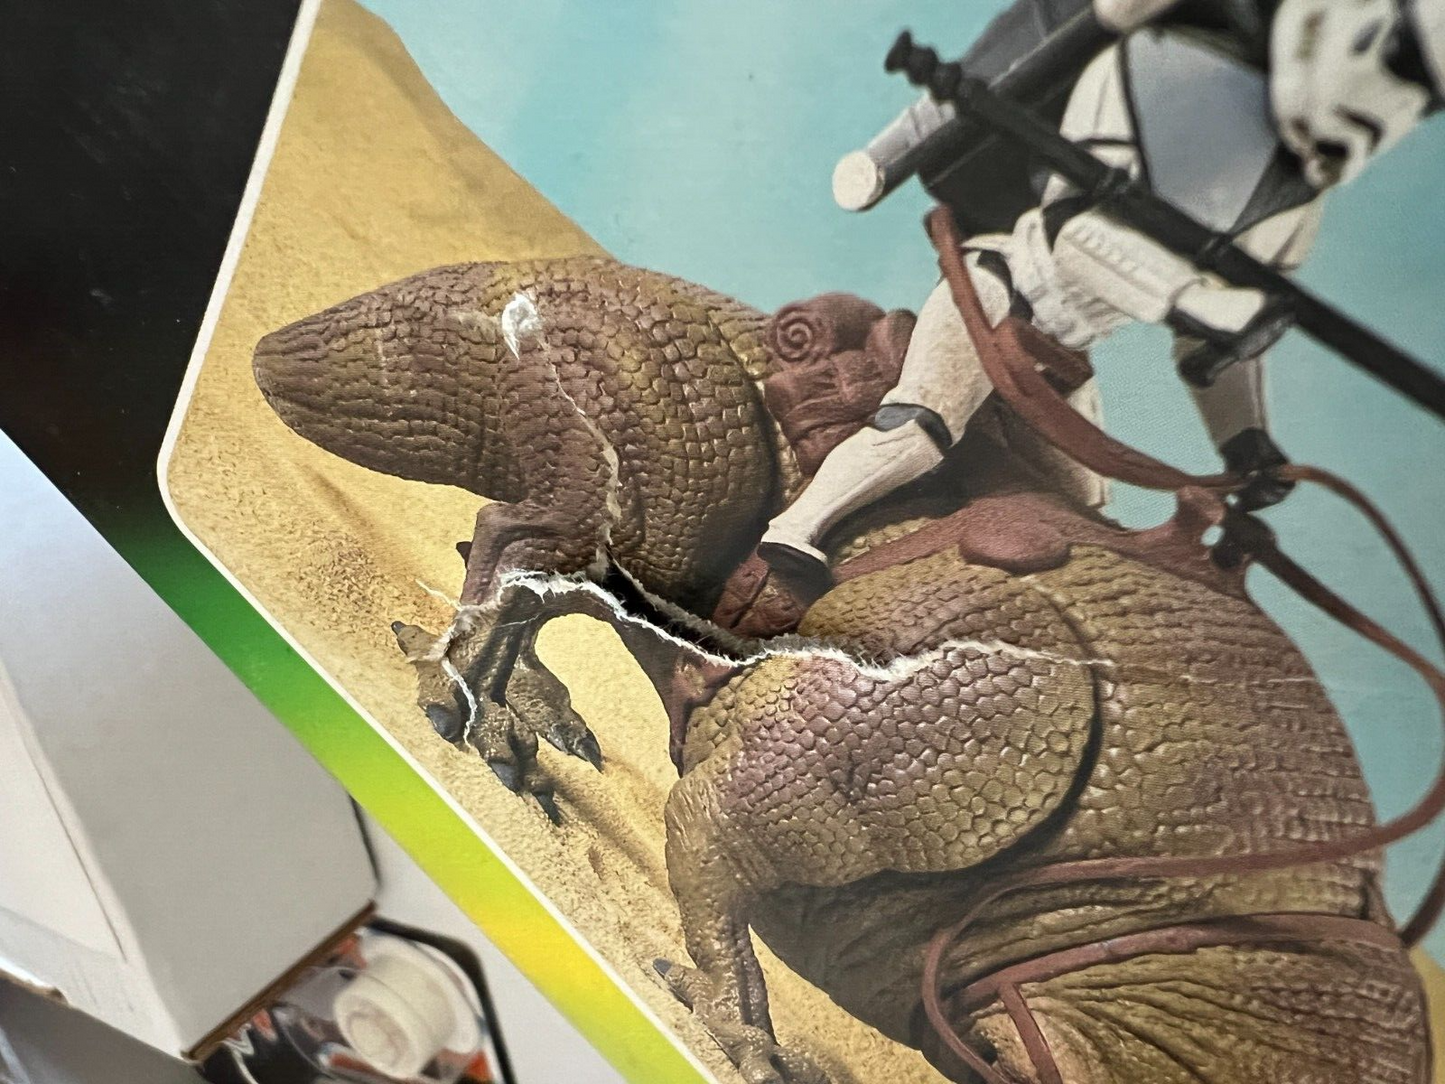 Star Wars Dewback Sandtrooper 1997 Kenner Action Figure Deluxe Set Fair Shape